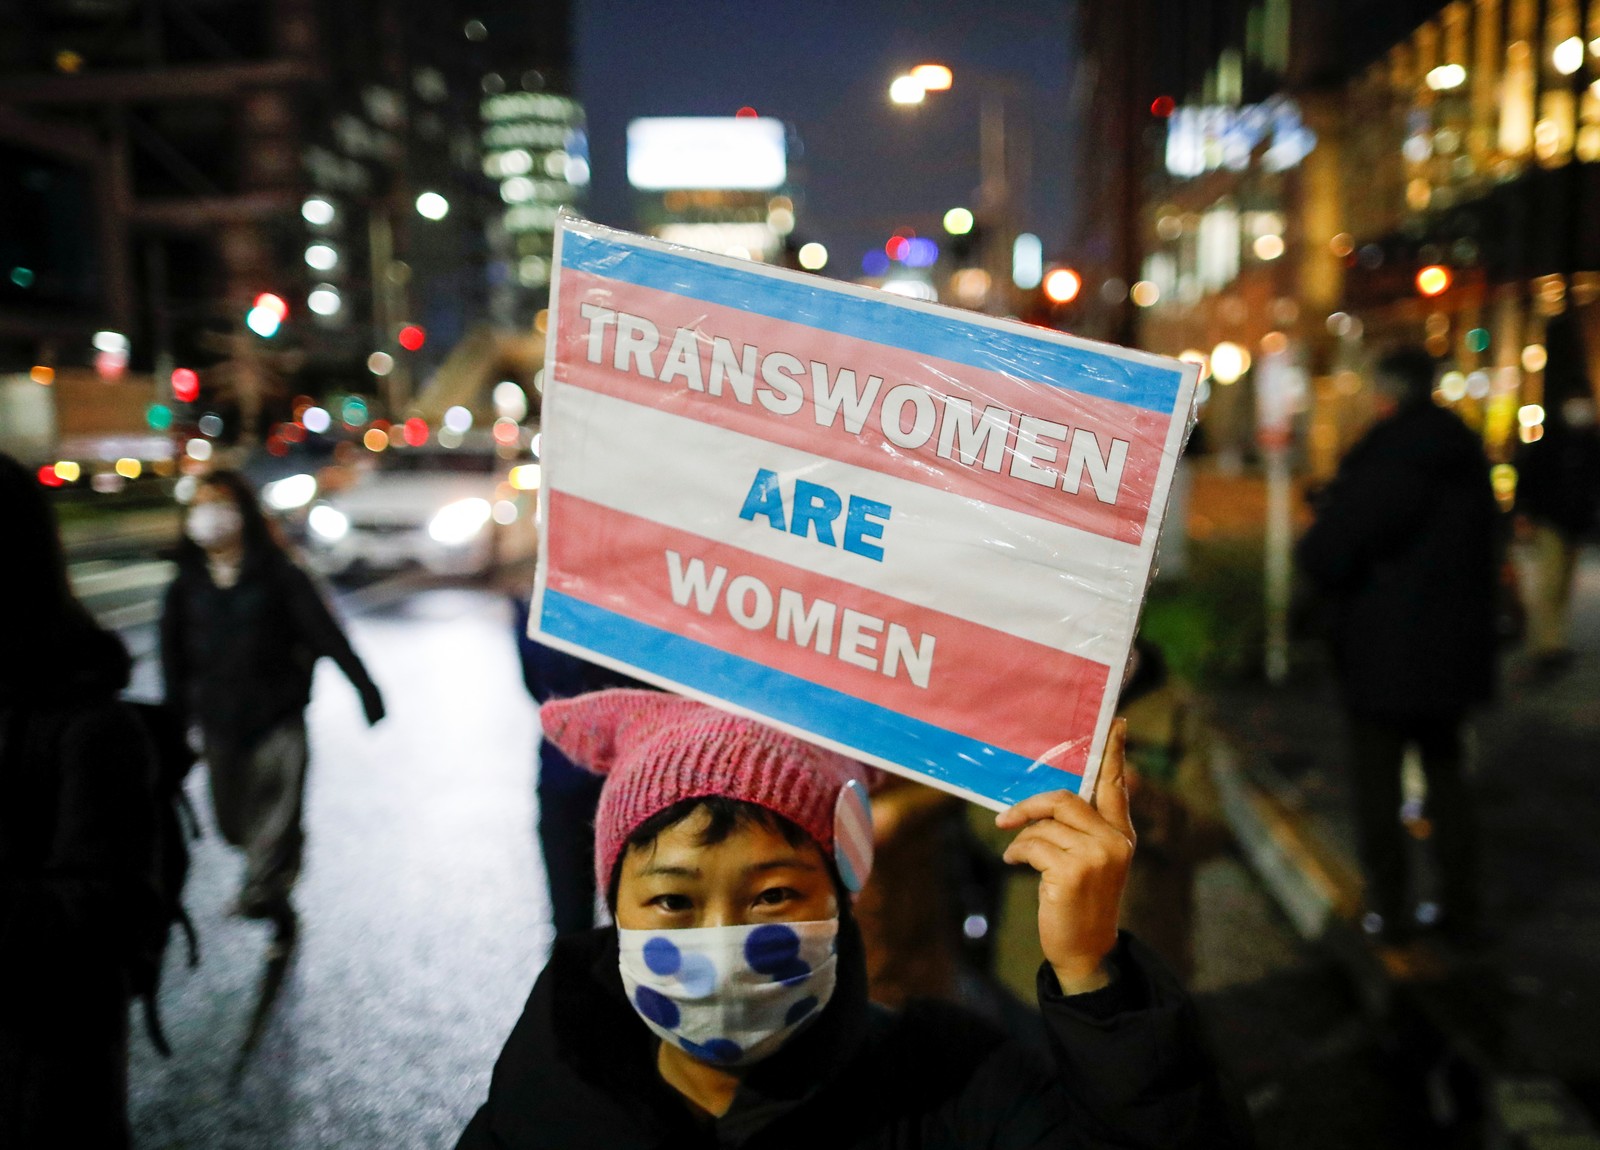 "Mulheres trans são mulheres", diz cartaz de manifestante em marcha por igualdade de gênero e protesto contra a discriminação de gênero, em Tóquio, JapãoREUTERS